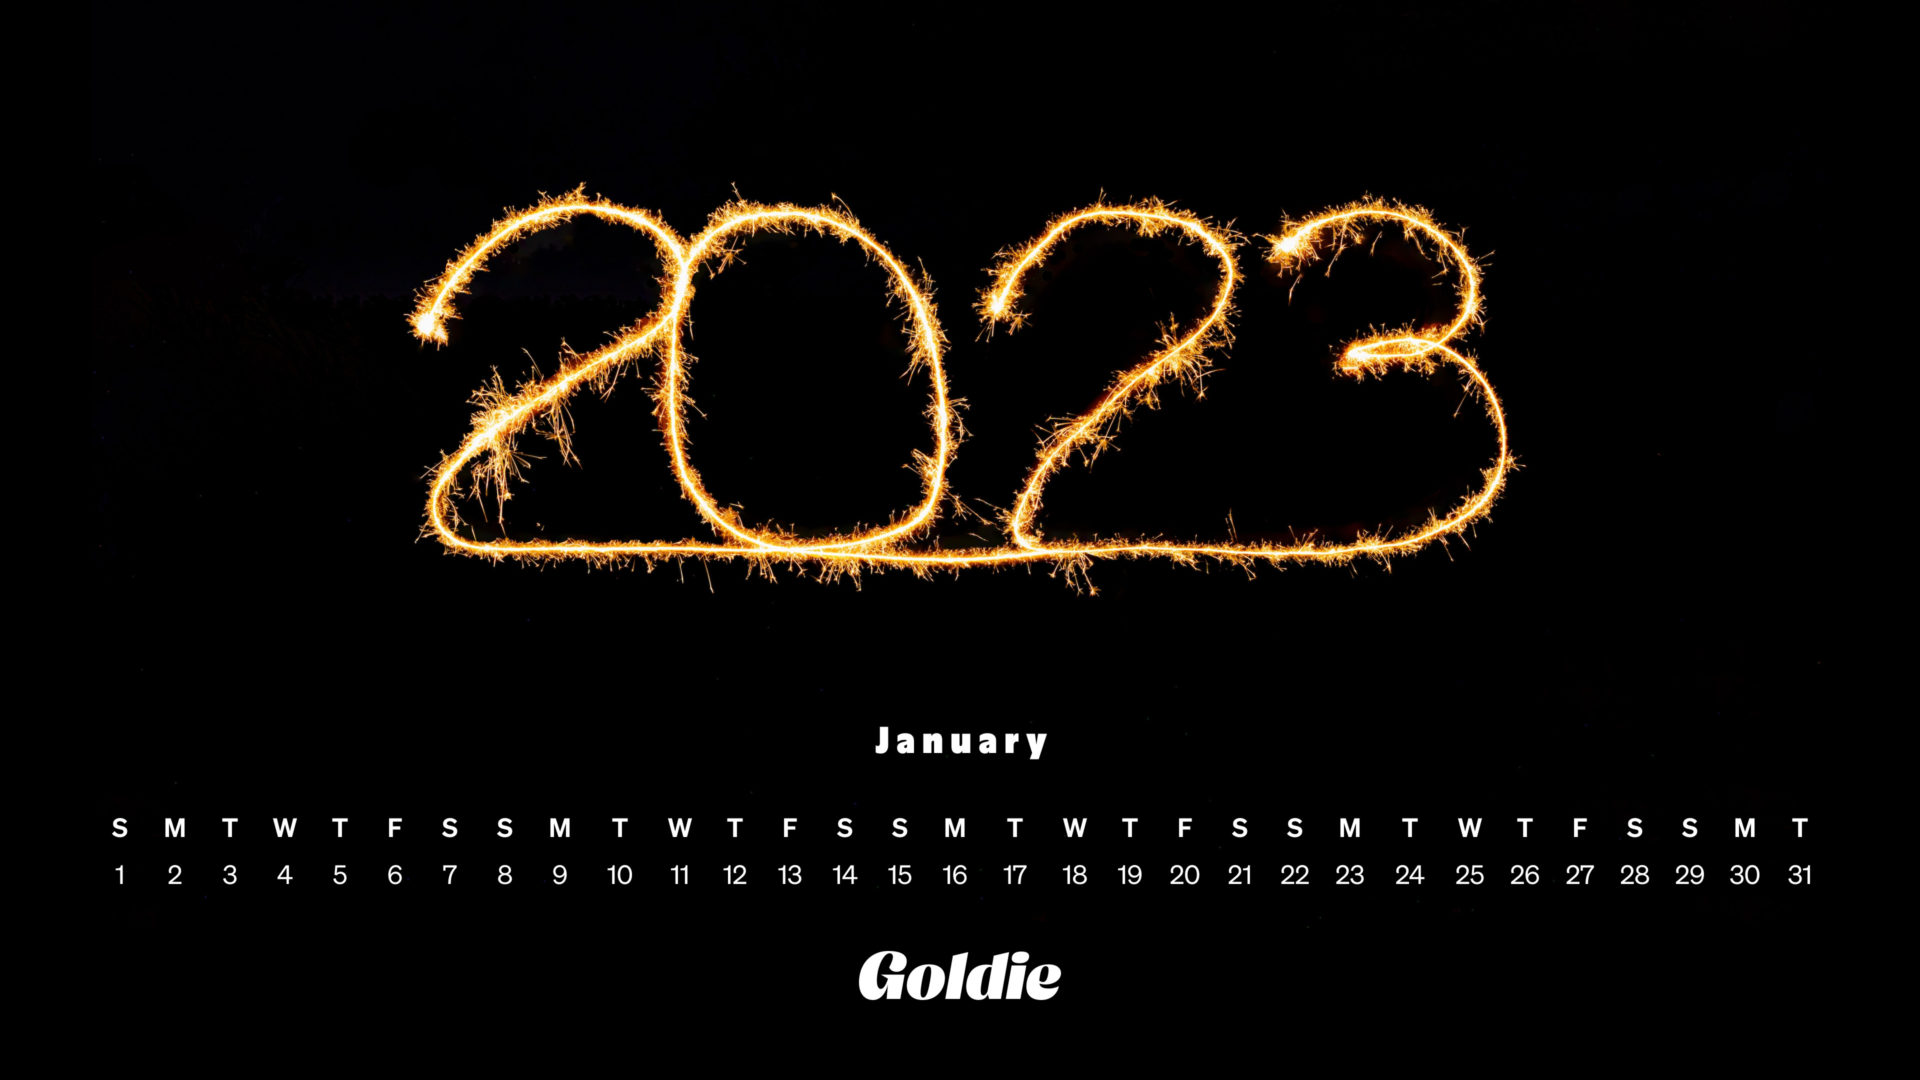 Bạn đang tìm kiếm một lịch tường thuật miễn phí cho năm 2024? Bạn đã tìm đúng chỗ rồi đấy! Với độ chính xác và chi tiết cao, lịch tường thuật miễn phí tháng 1 năm 2024 sẽ giúp bạn không bỏ lỡ bất kỳ sự kiện nào trong năm mới.